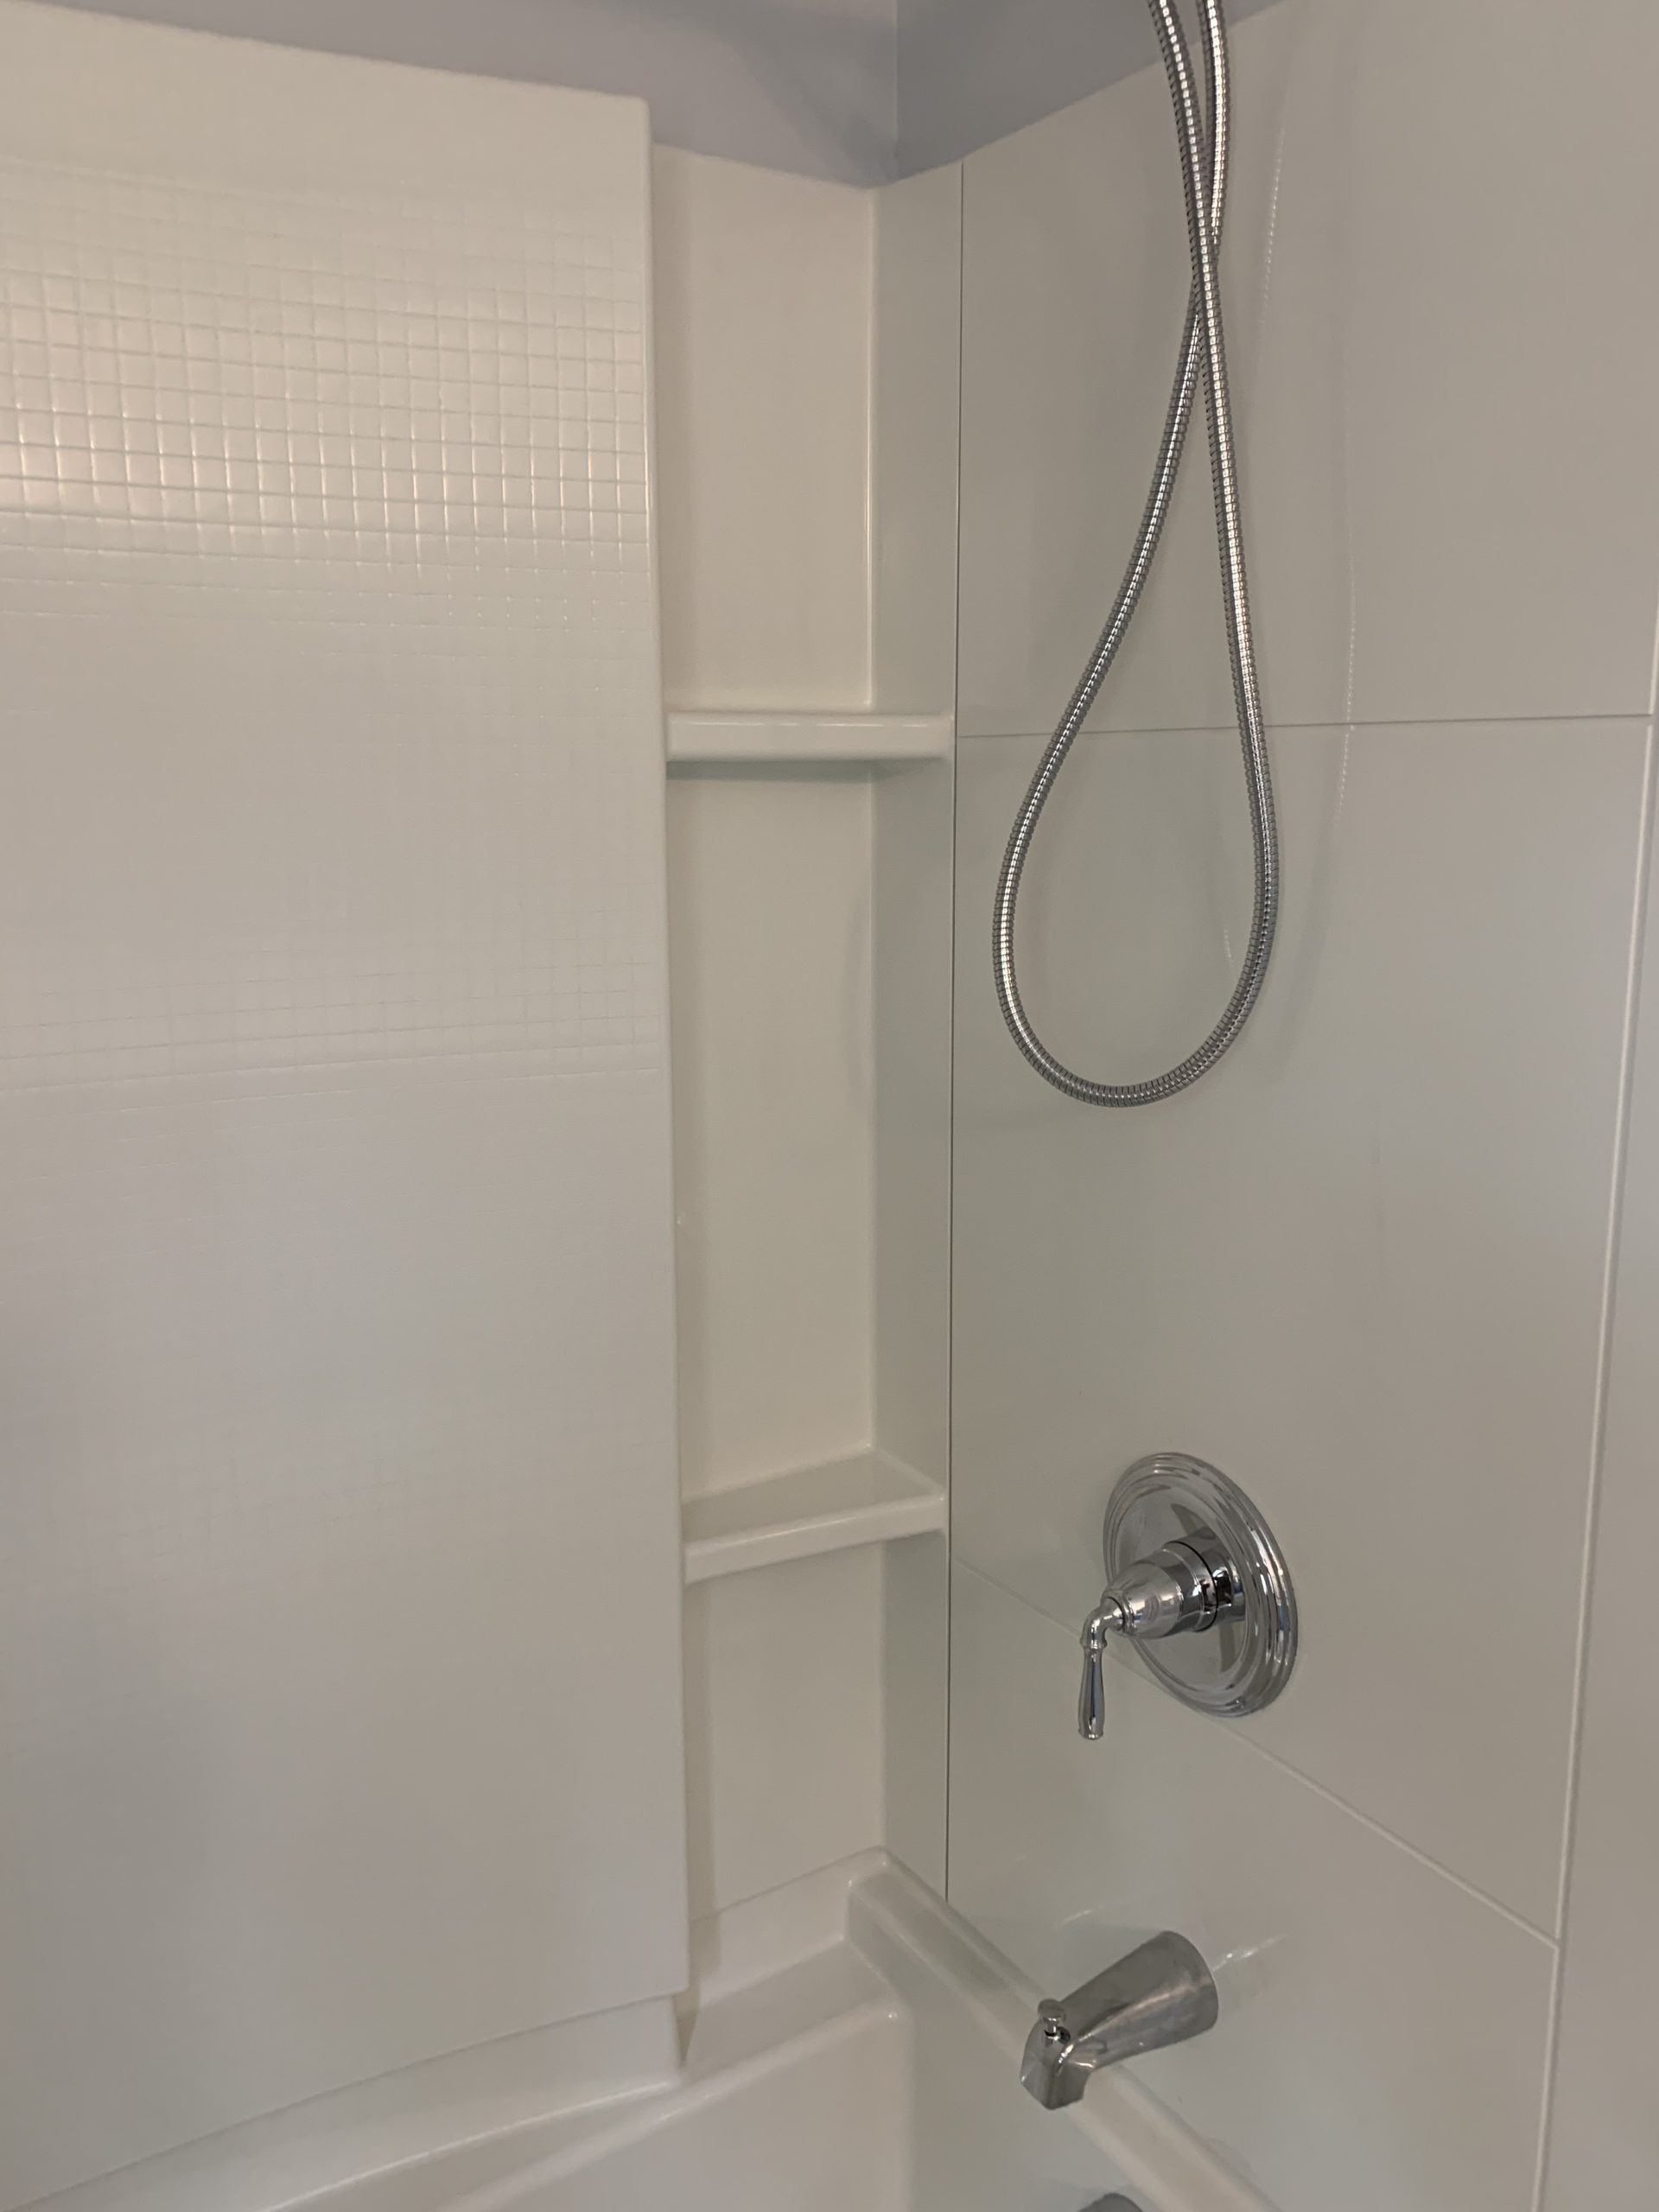 Formed Shelves in Shower